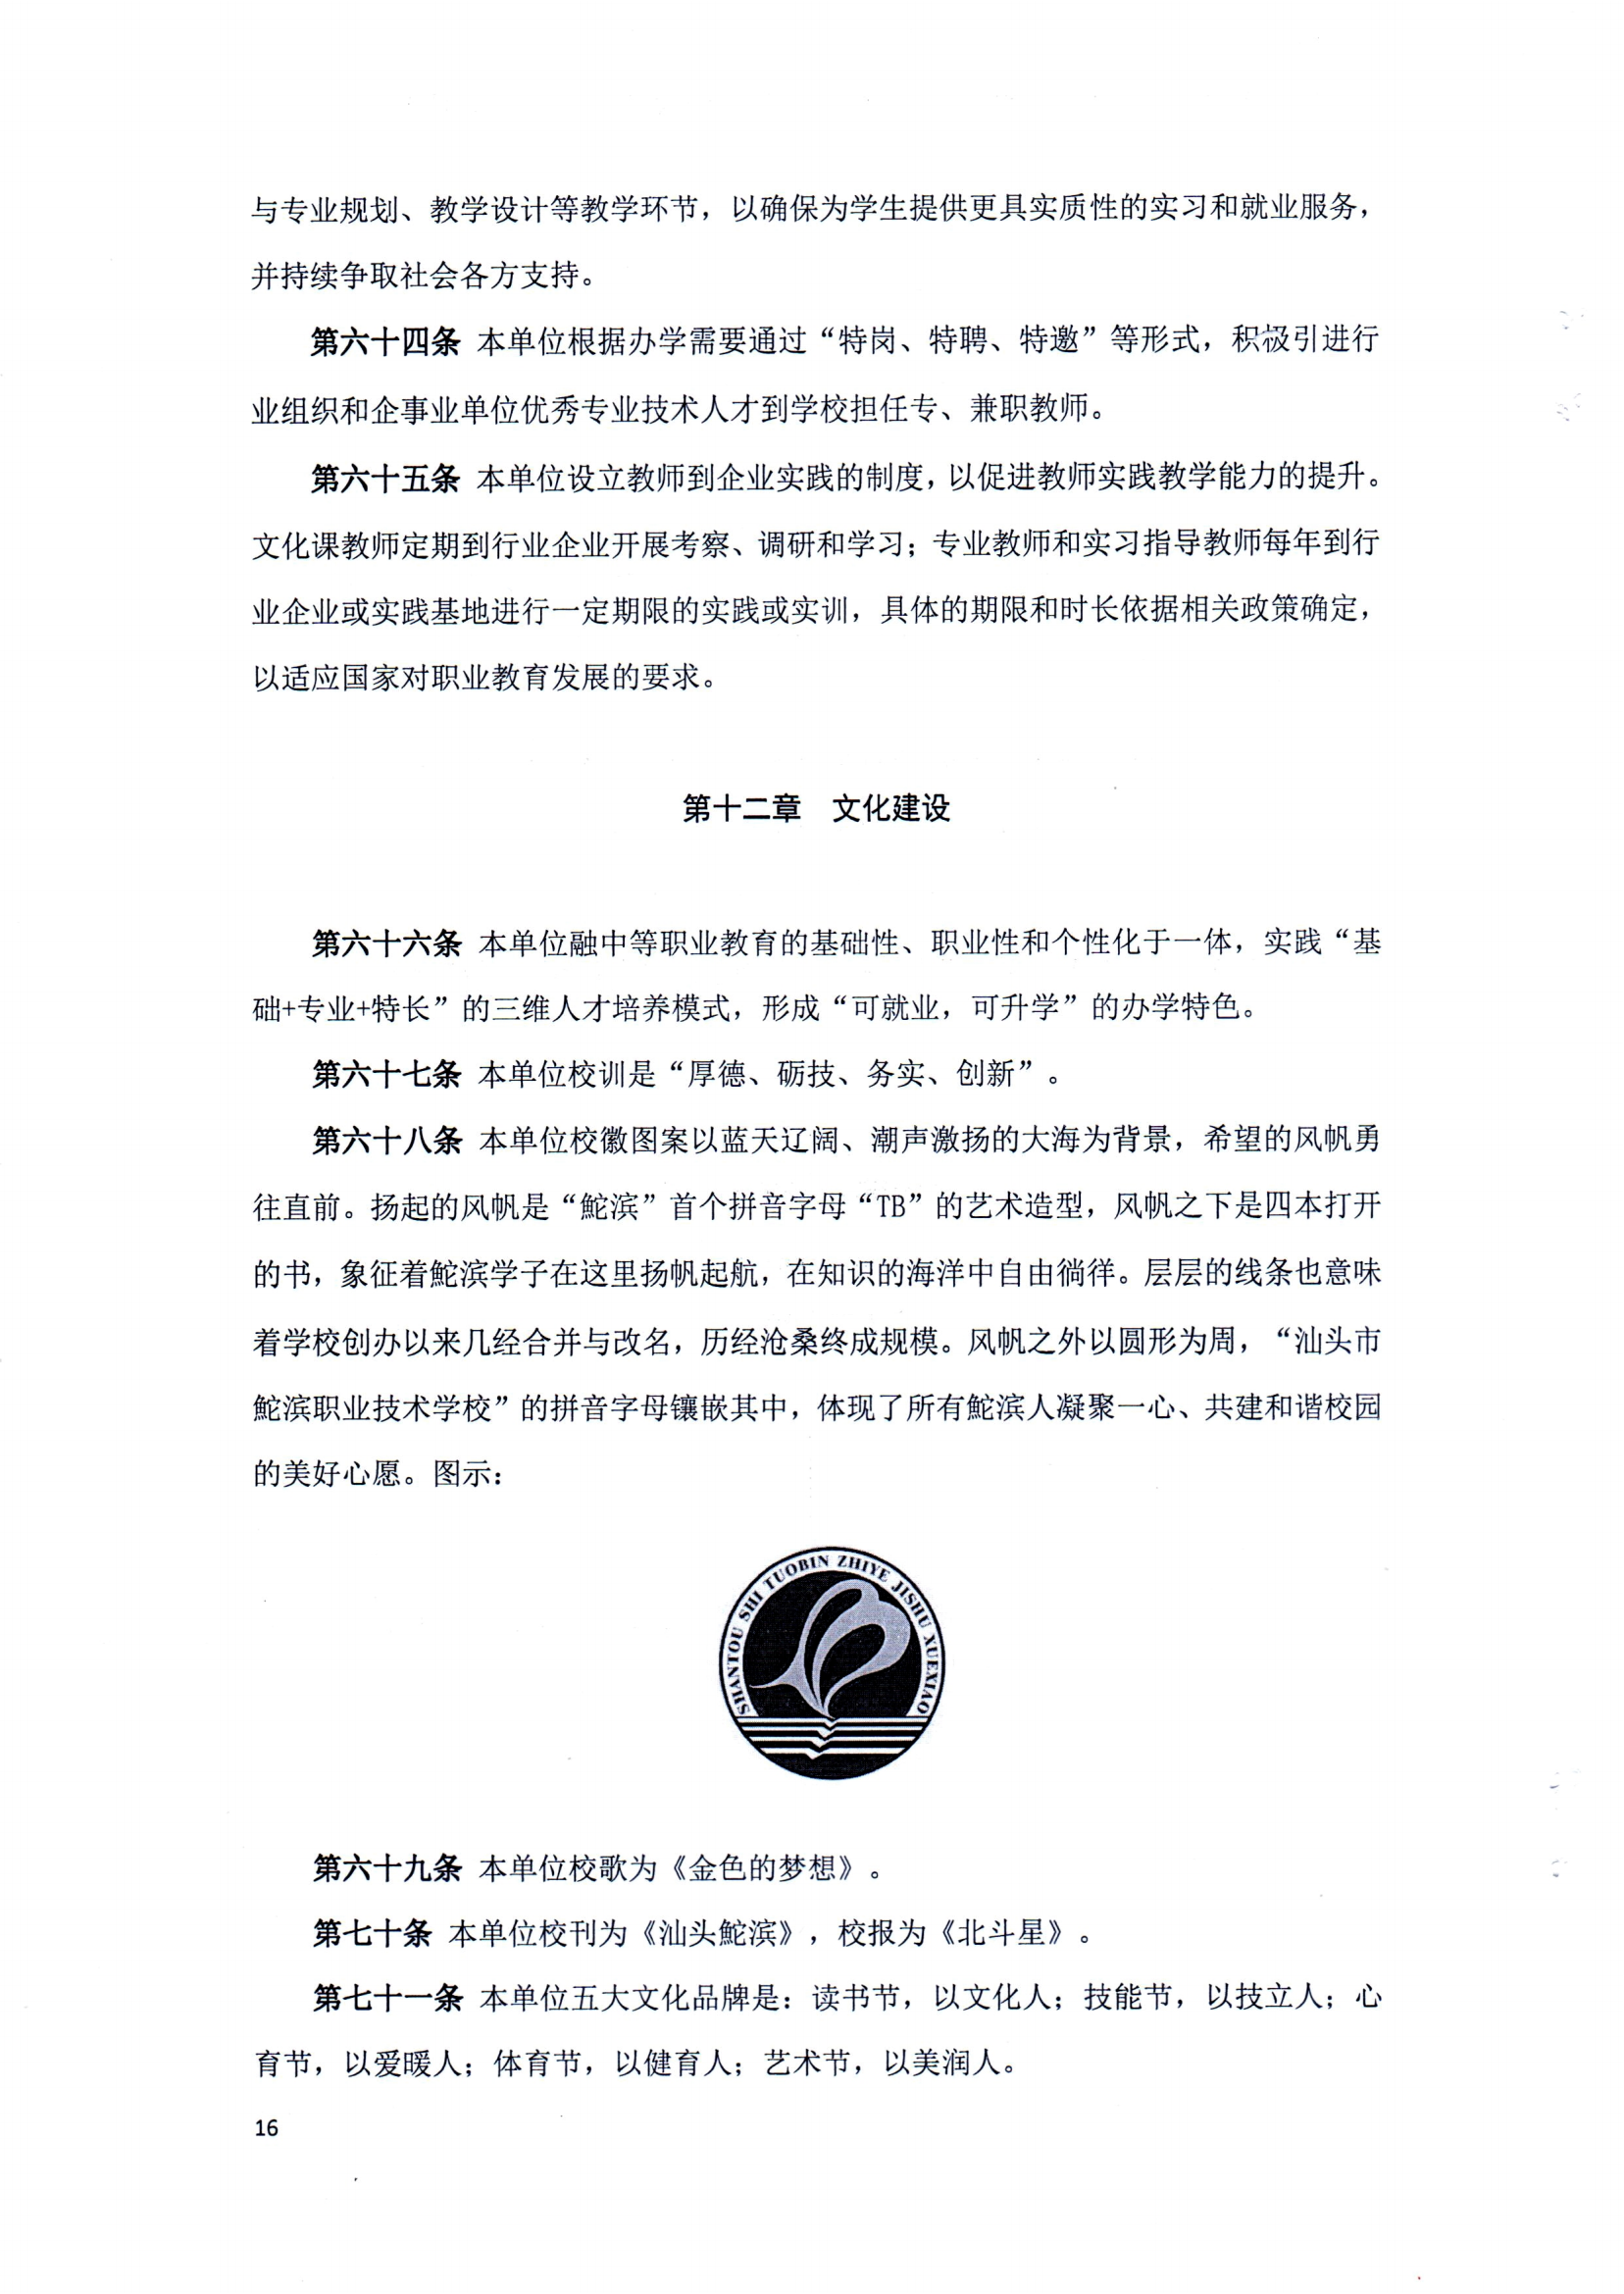 （中国）有限公司官网章程（修正案）_15.png